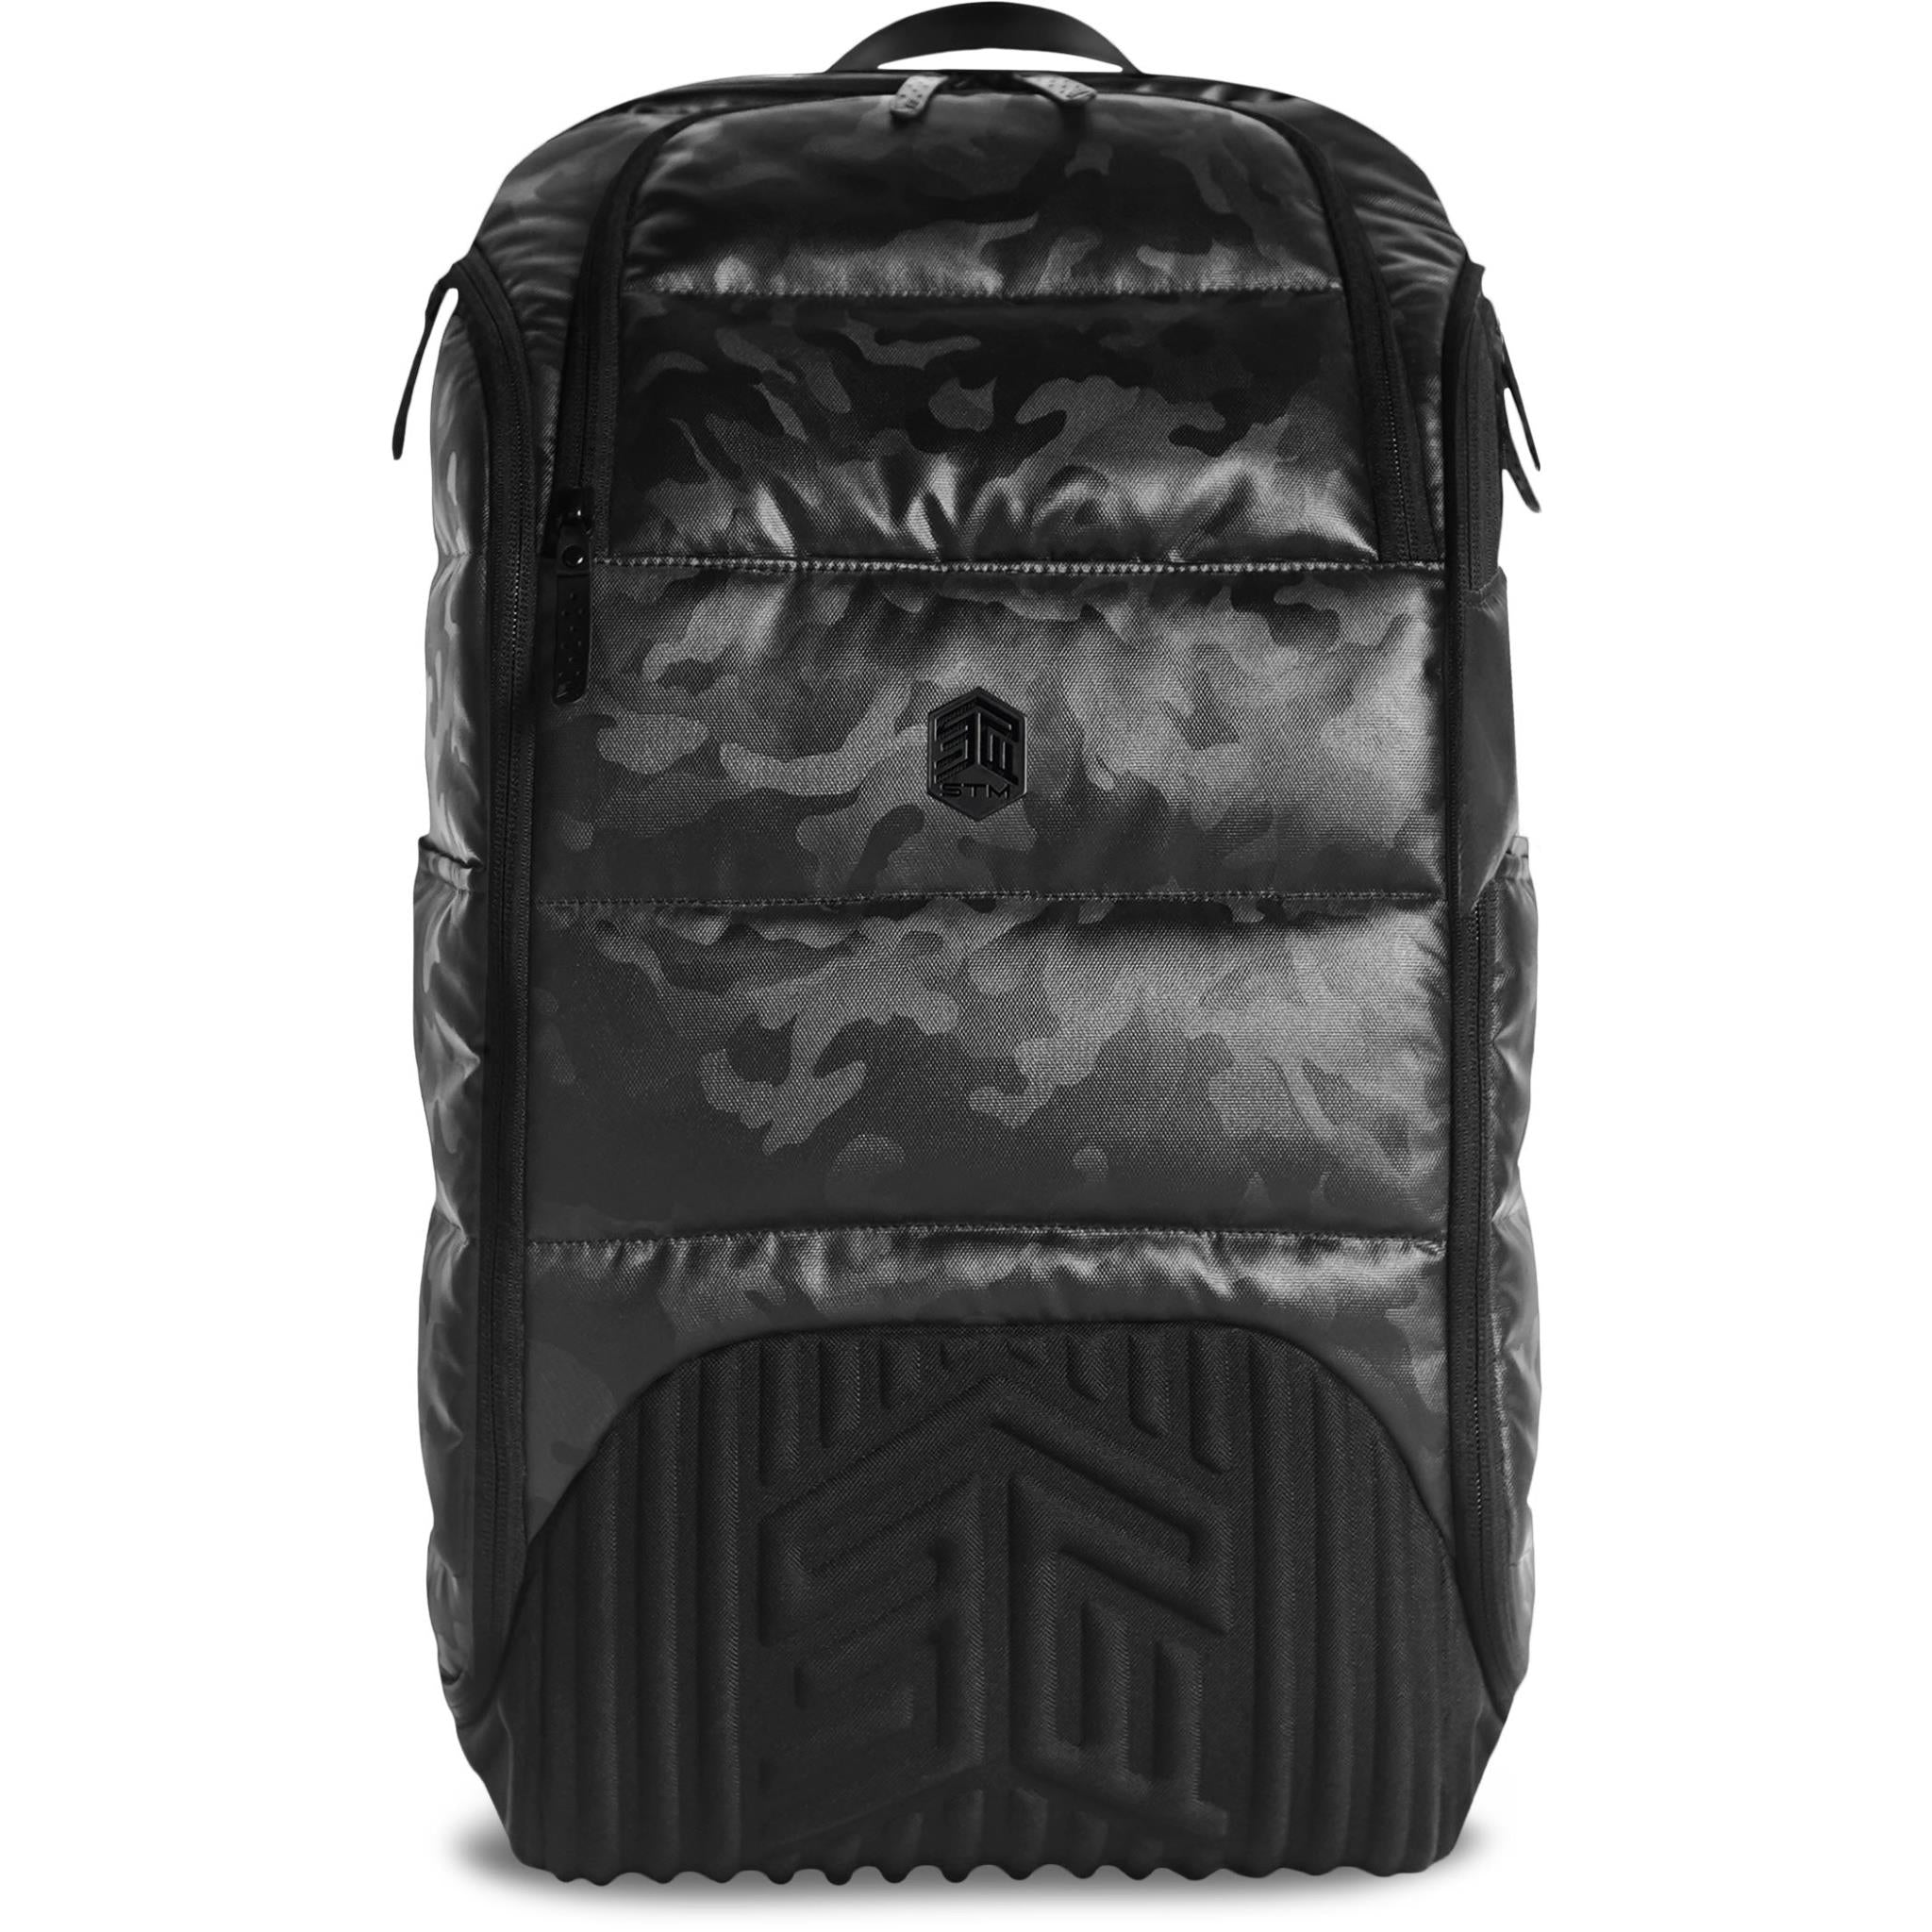 stm 17" dux 30l laptop backpack (black camo)